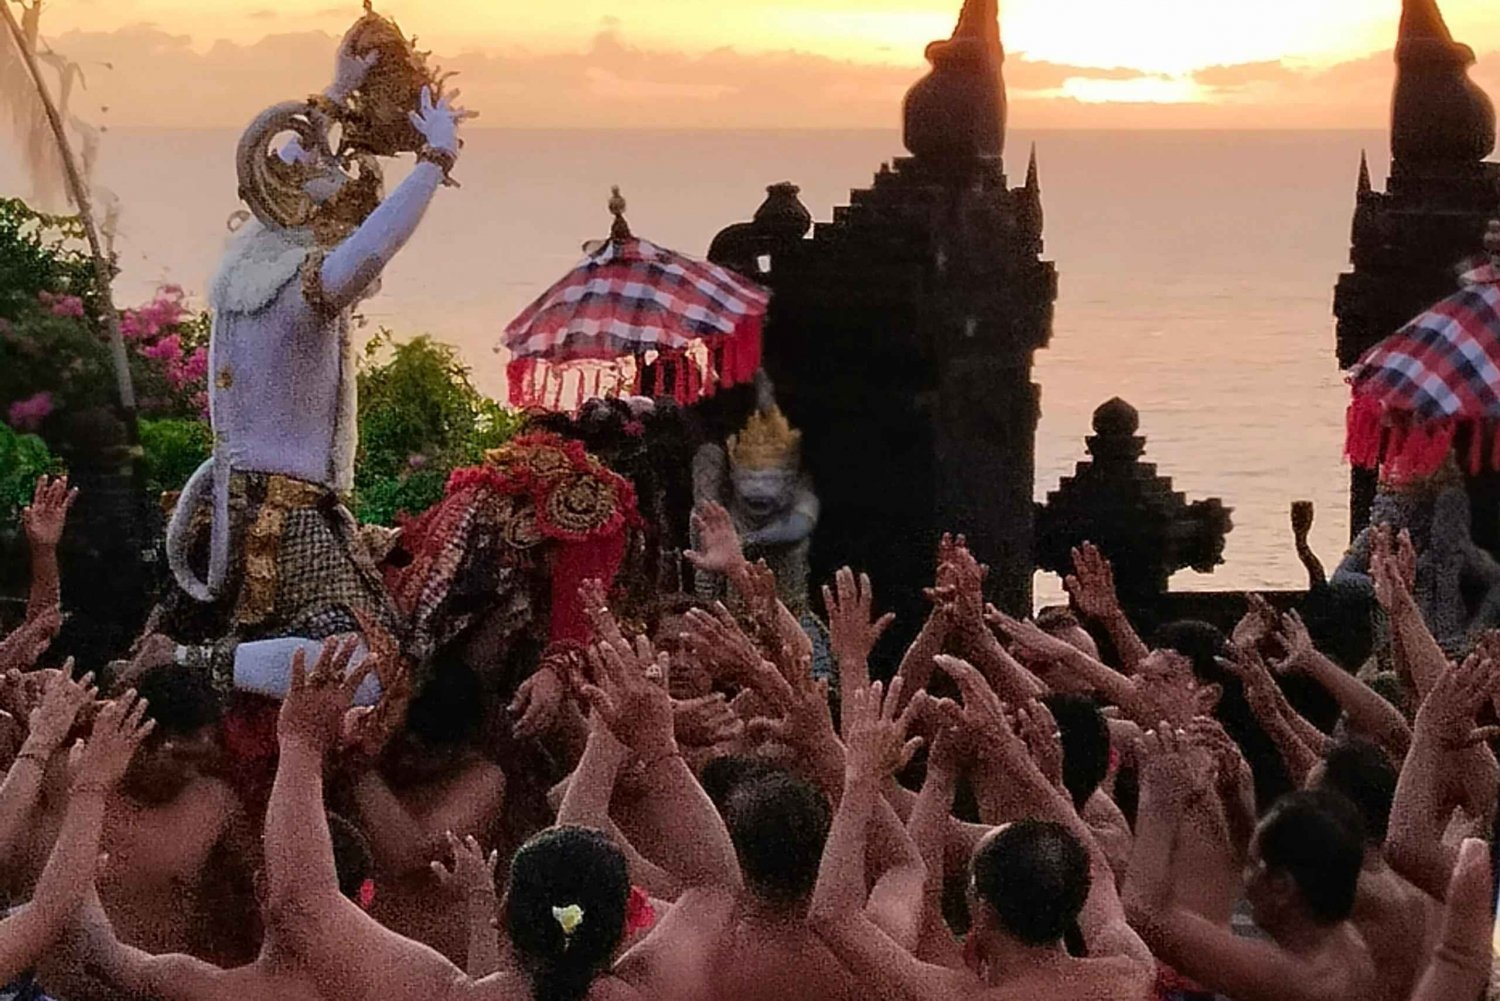 Puesta de sol en Bali: danza kecak de uluwatu con traslado de ida y vuelta